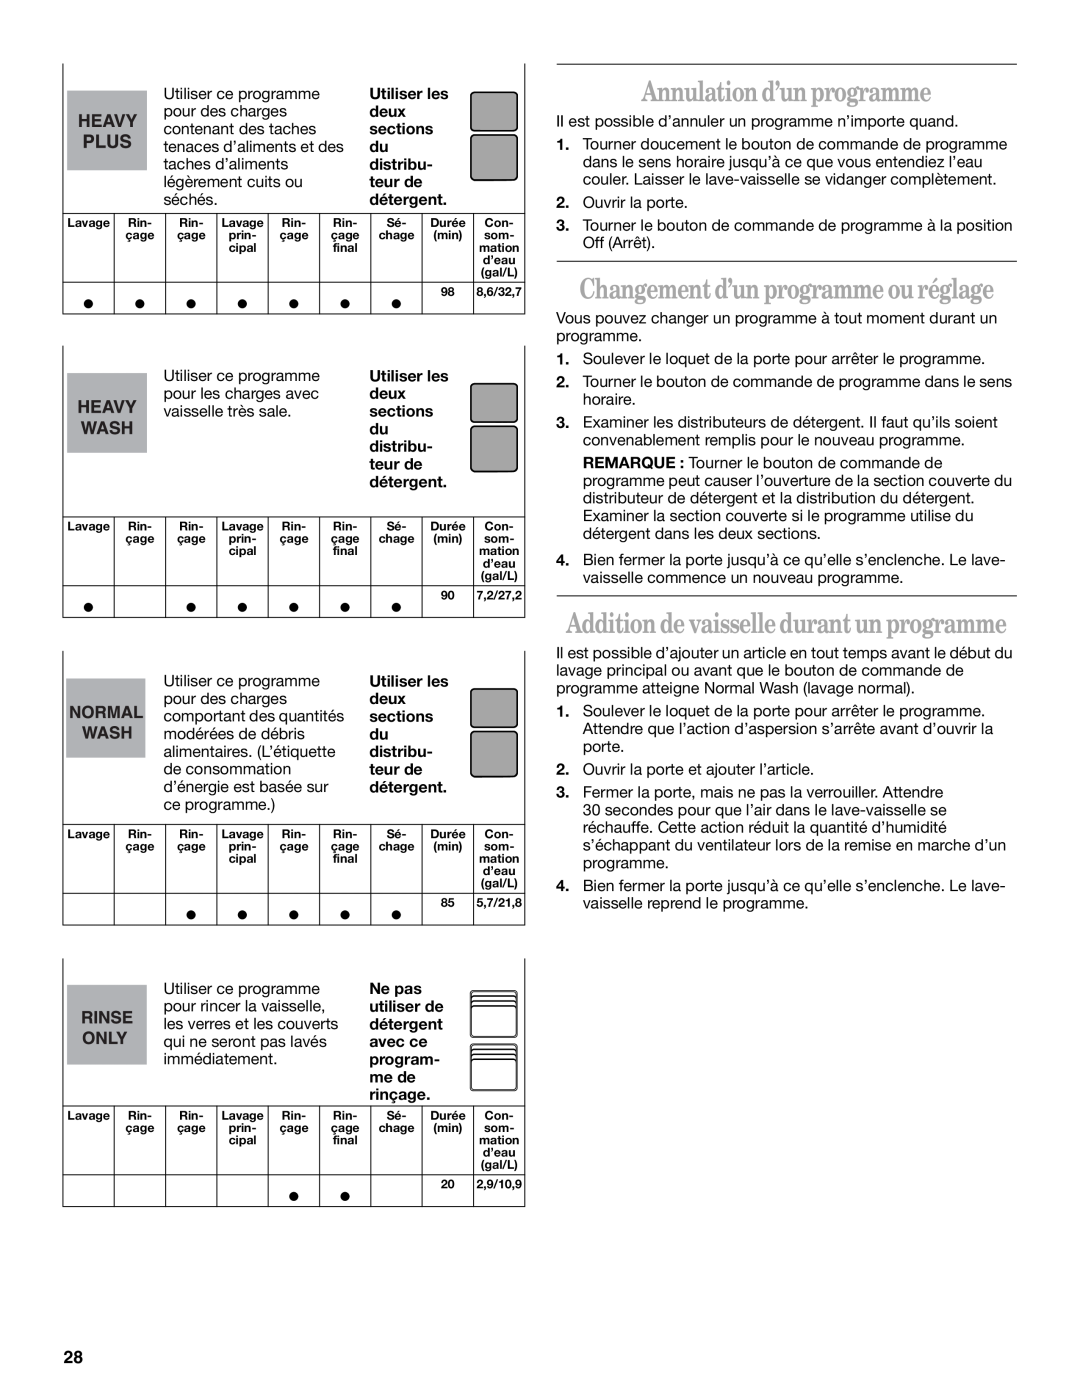 Whirlpool Series 810 manual Annulation d’un programme, Changement d’un programme ou réglage 